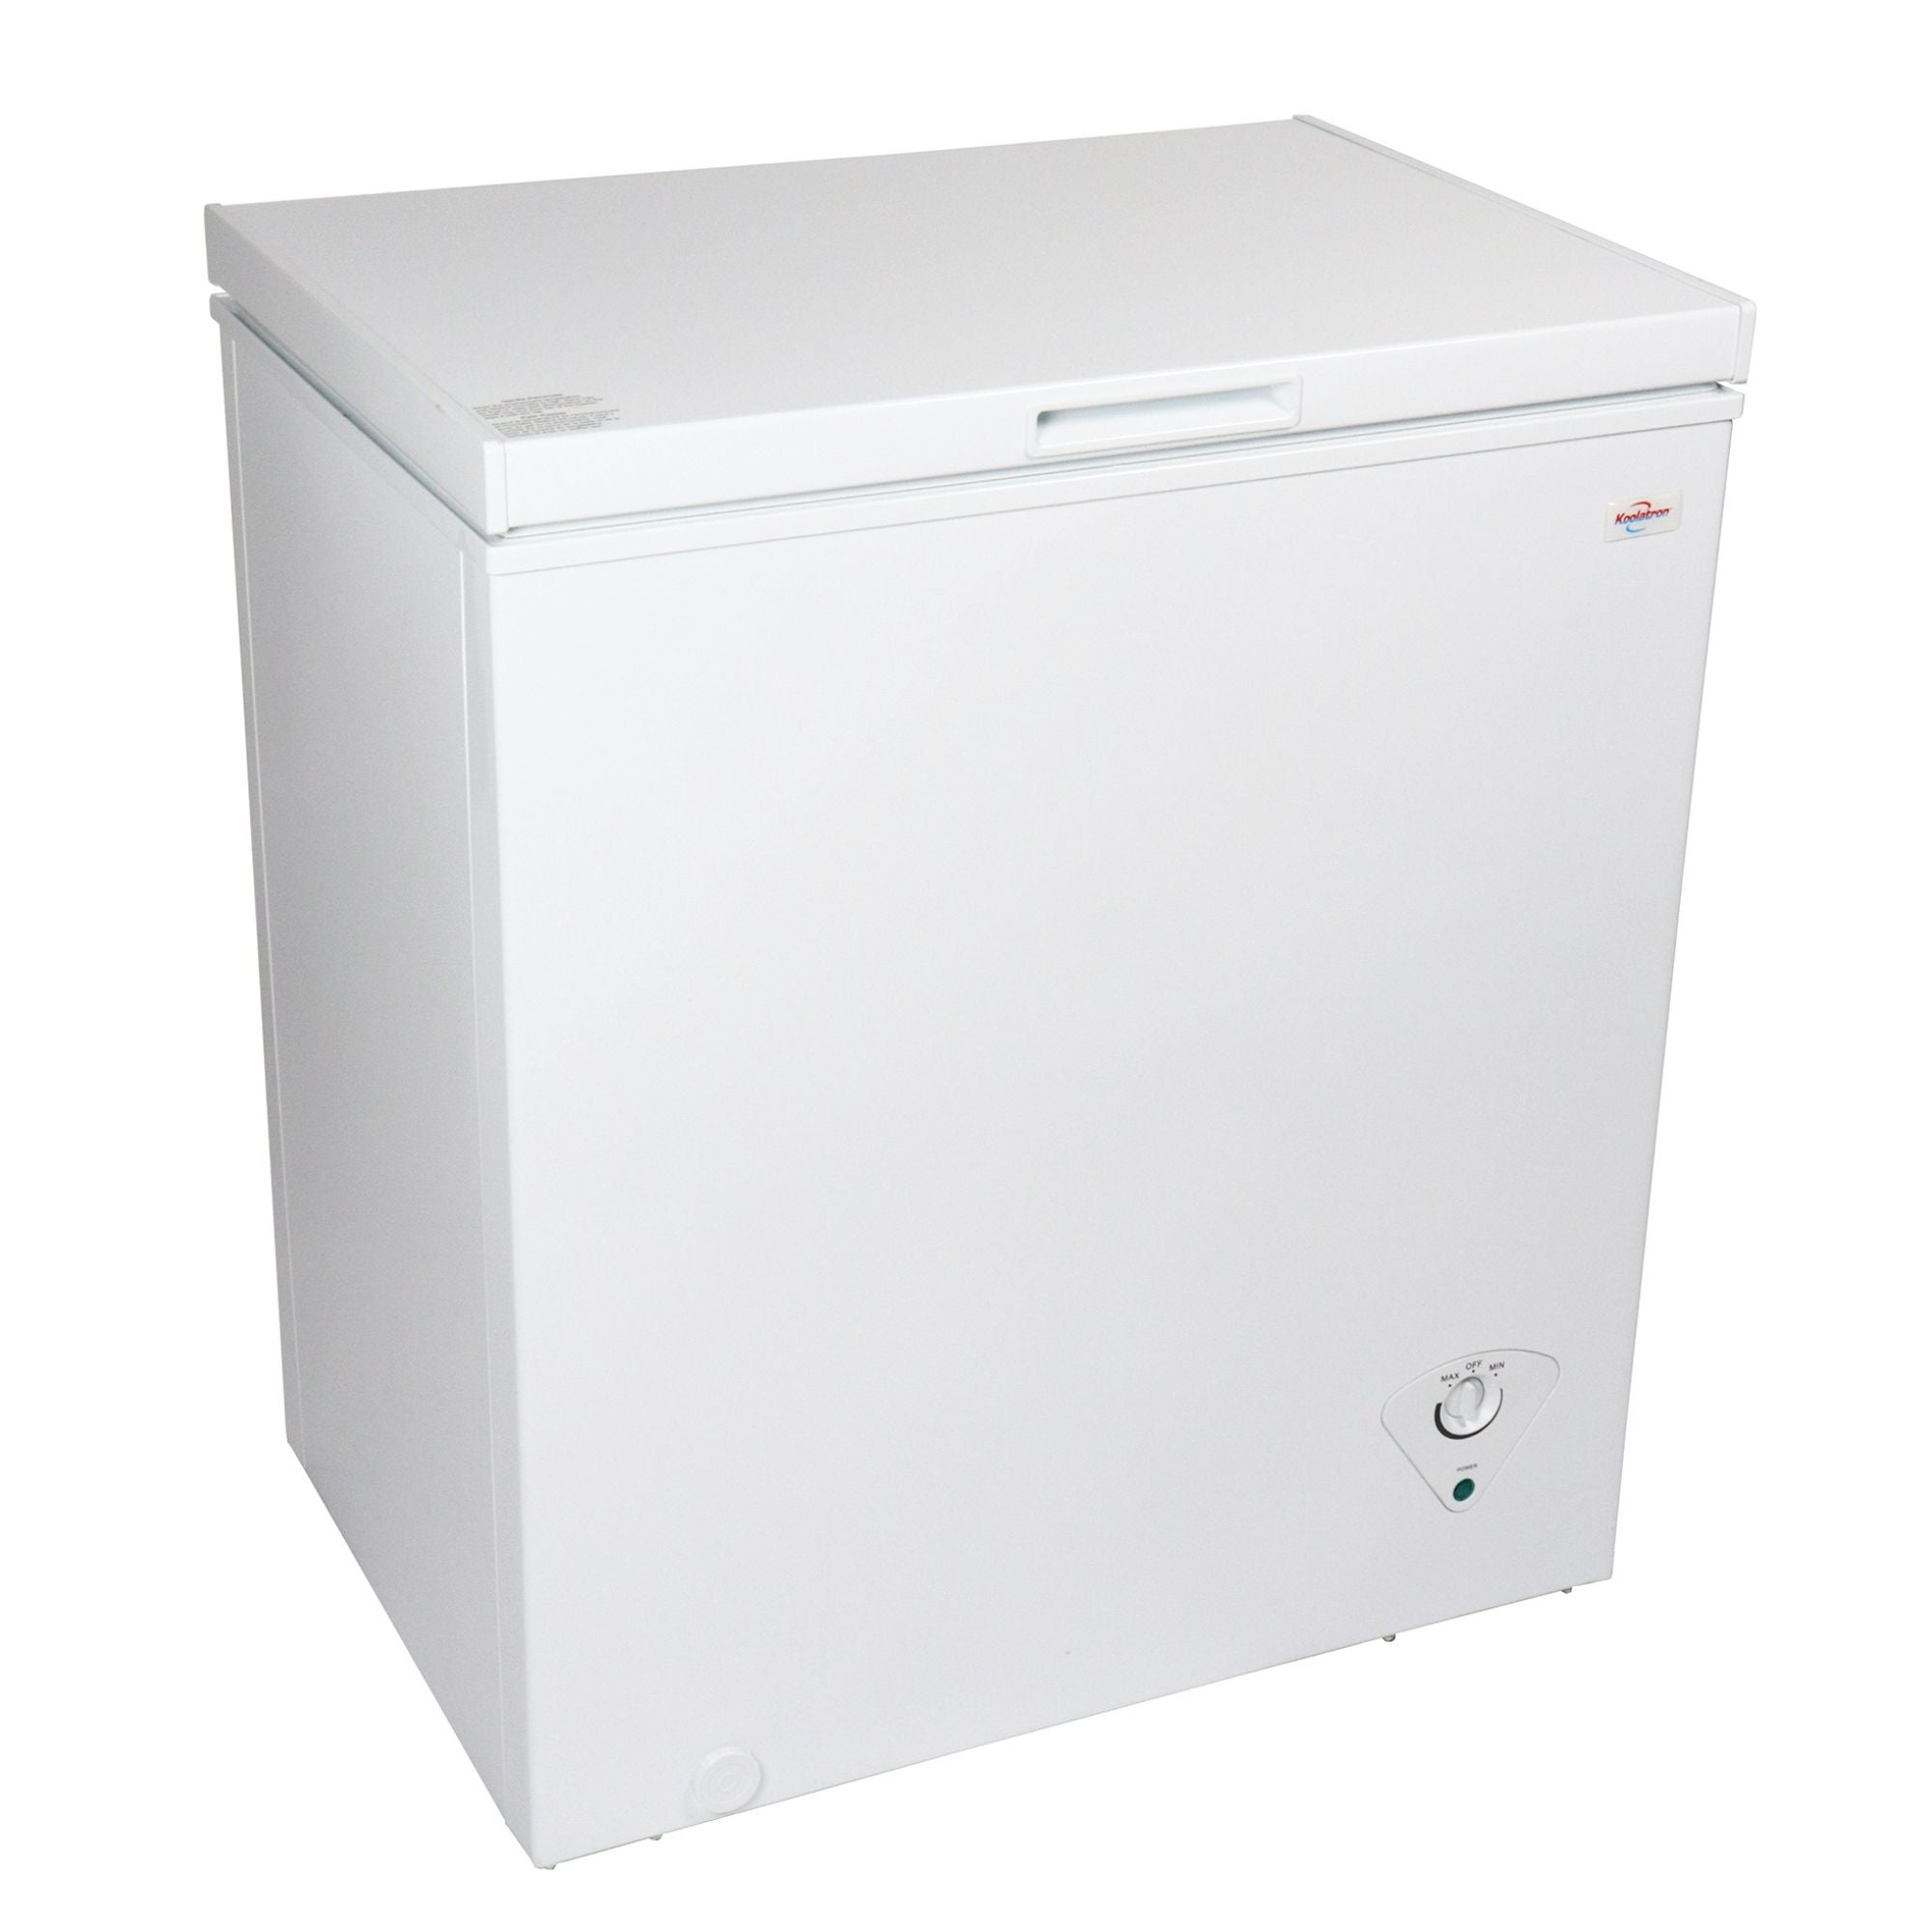 Koolatron white chest freezer, closed, on a white background